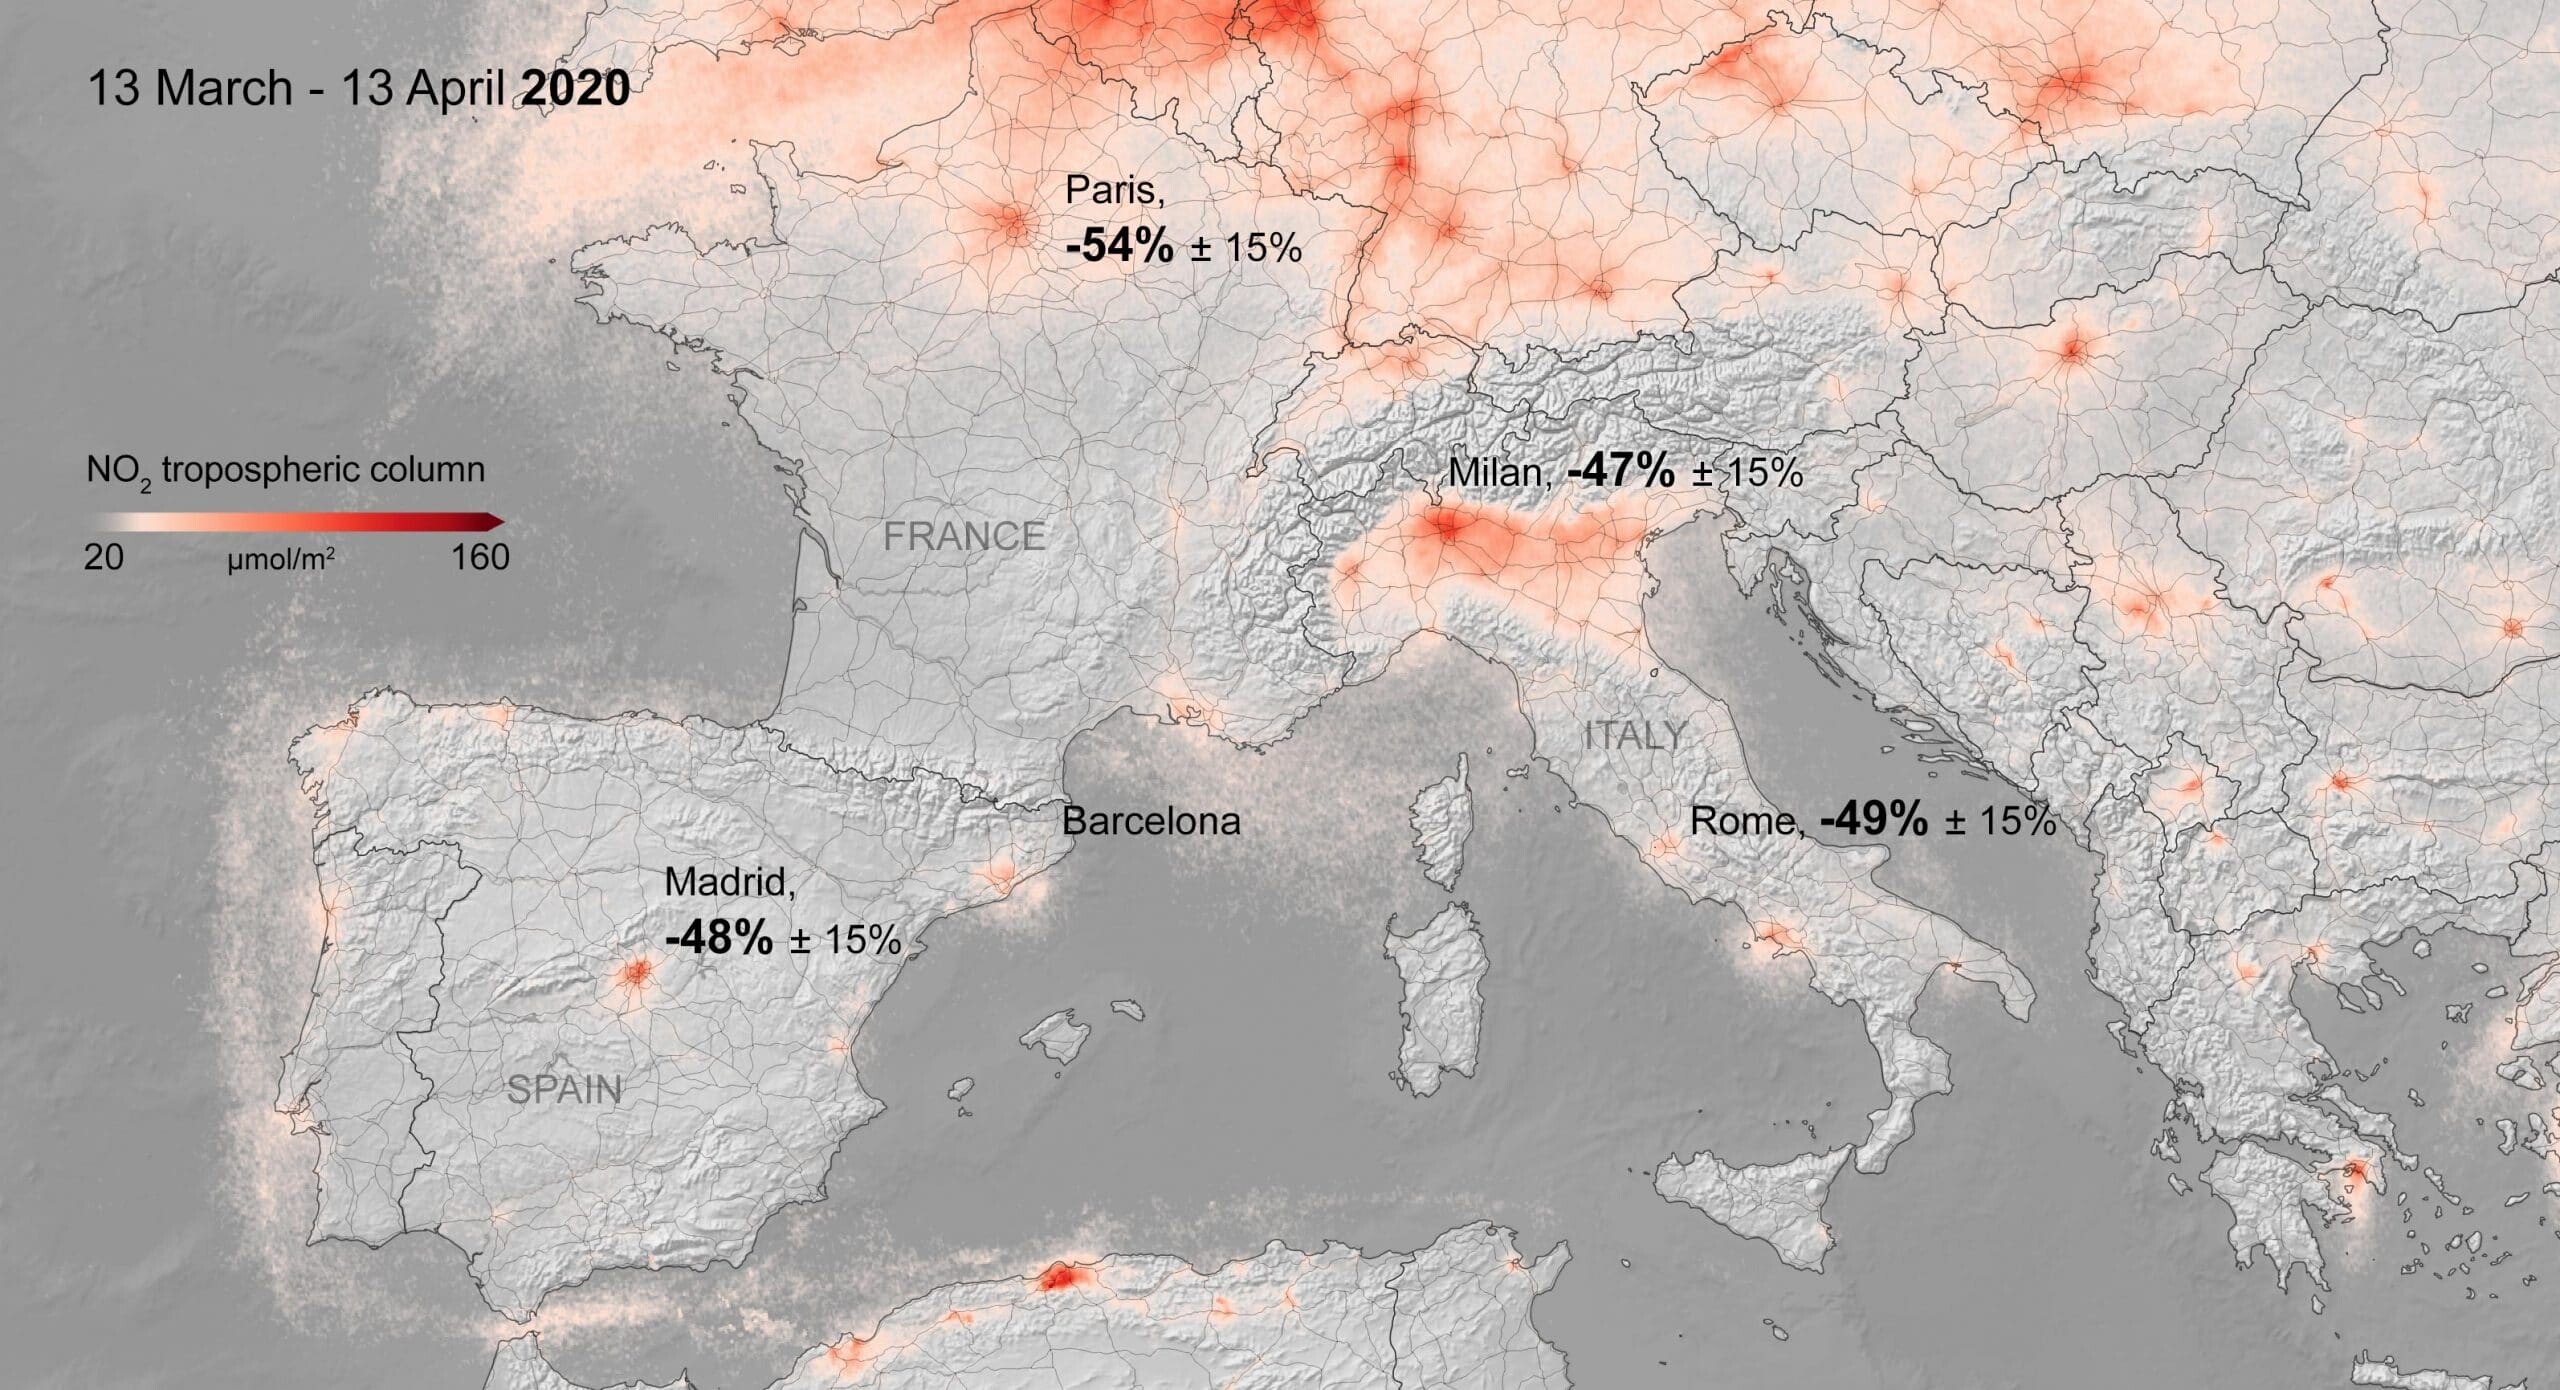 niesamowite zdjecia satelitarne pokazuja spadek zanieczyszczenia powietrza odkad europejczycy pozostaja w domach 03